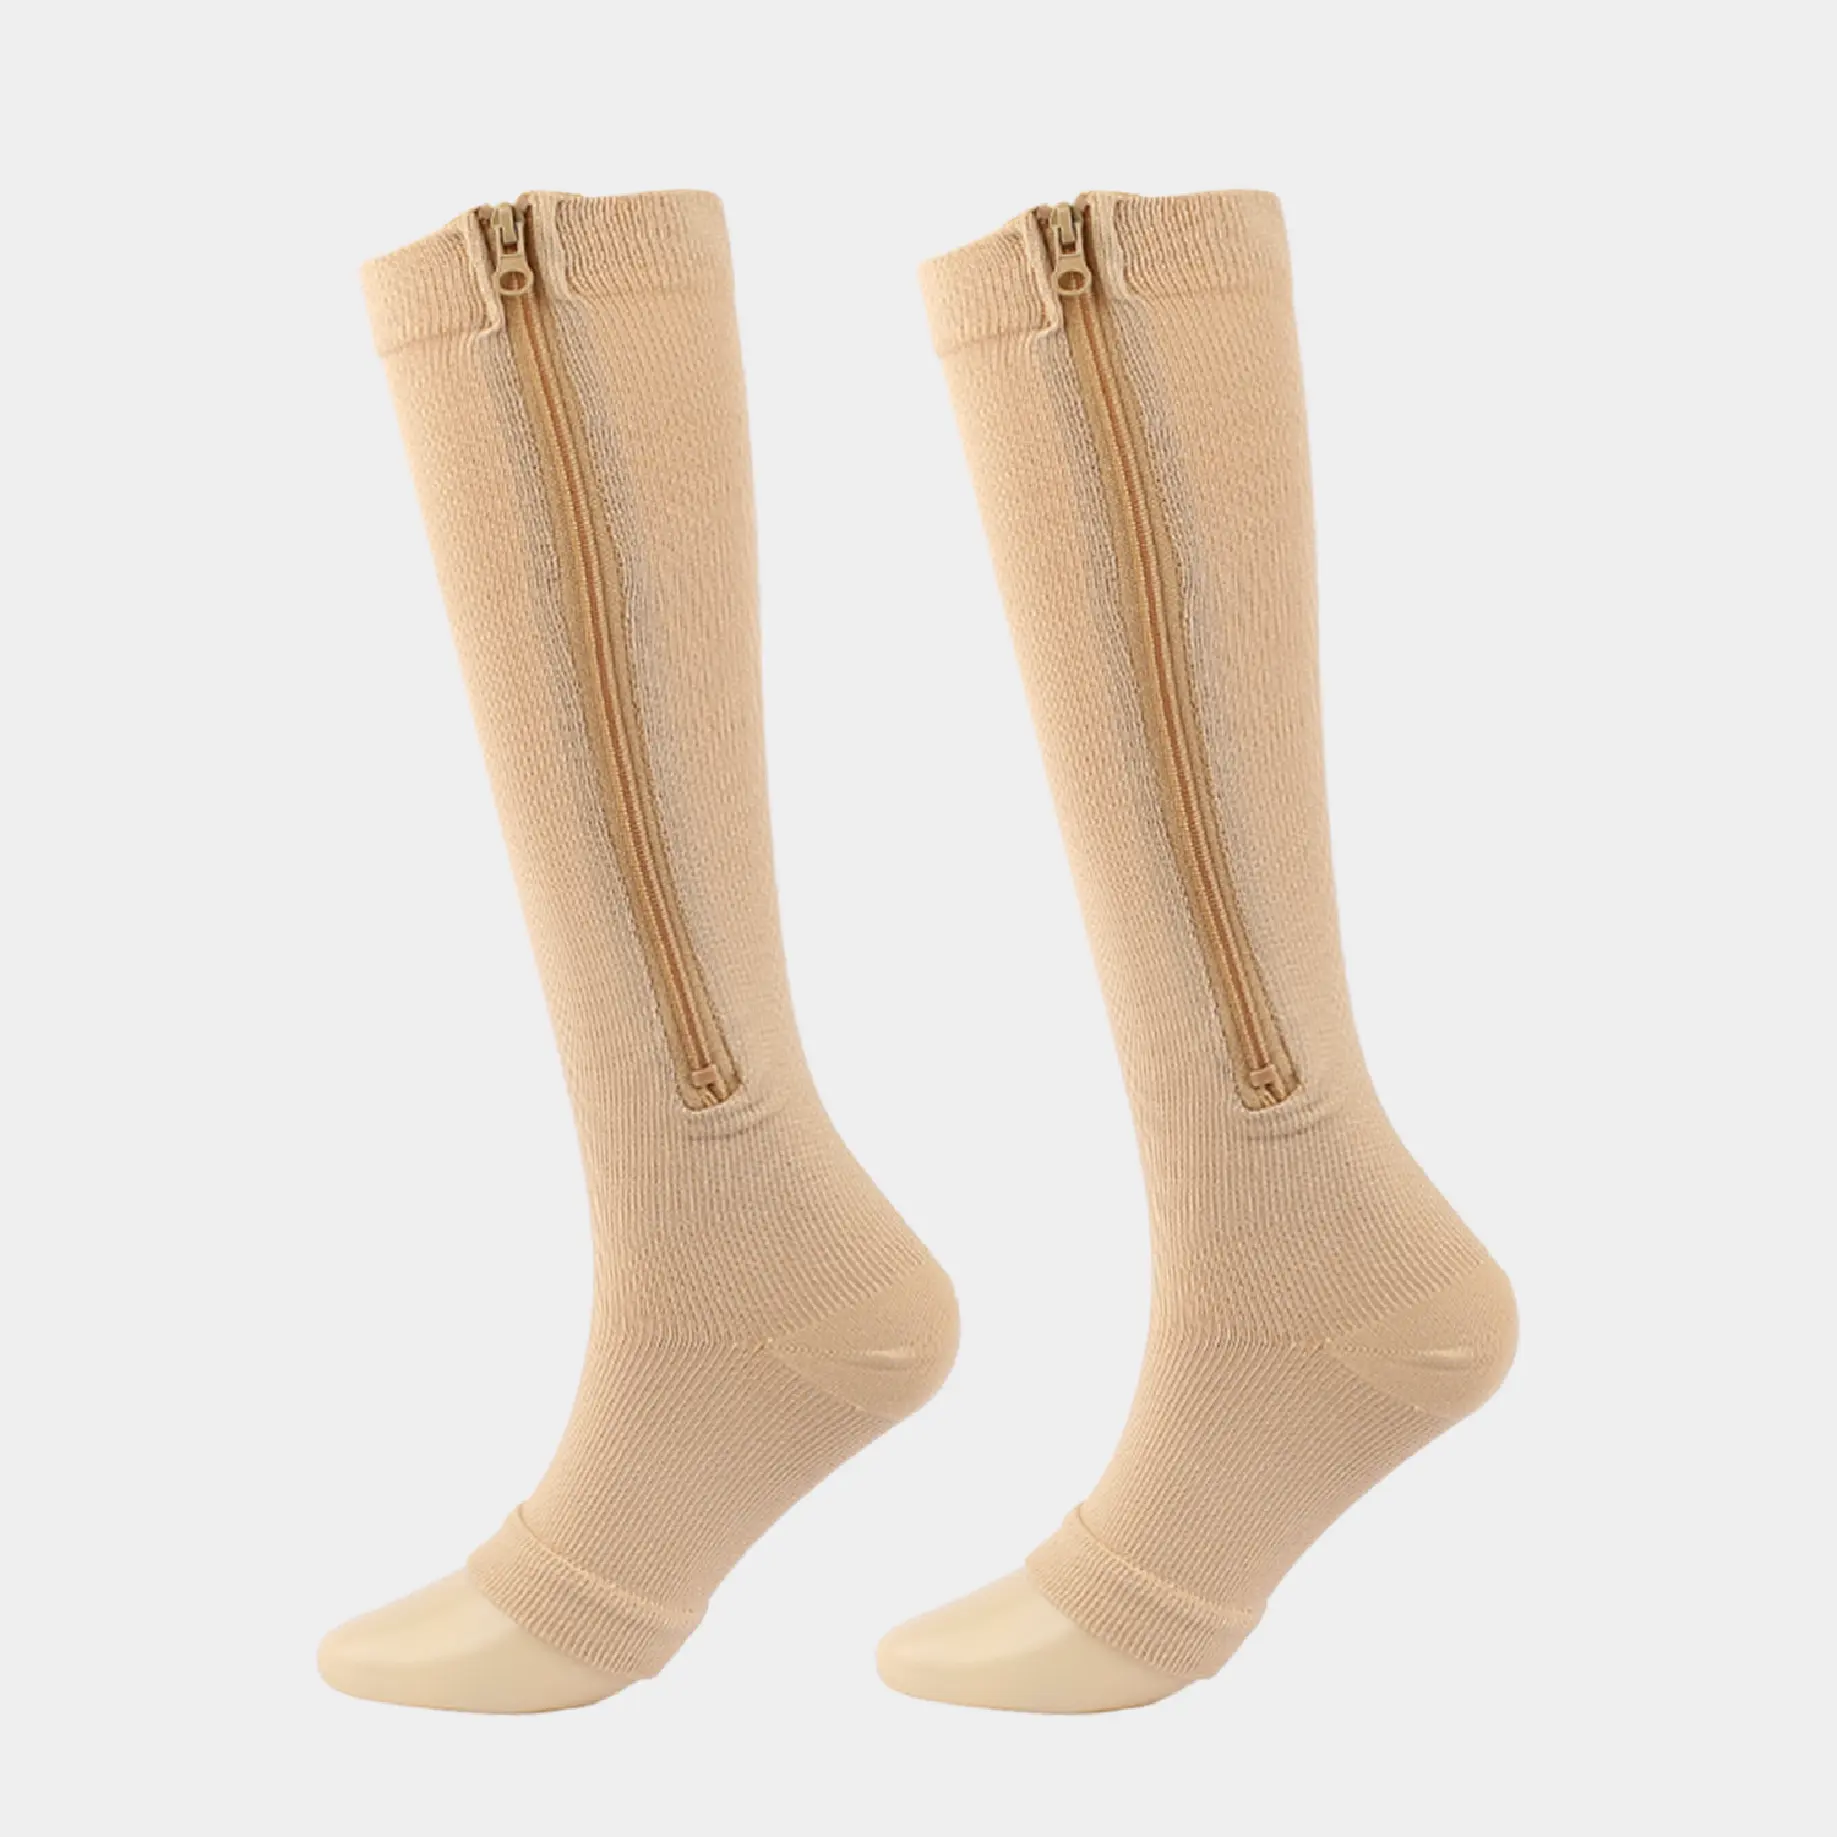 Chaussettes élastiques respirantes de compression mi-mollet unisexes personnalisées avec fermeture à glissière latérale, chaussettes fonctionnelles explorées à la hauteur du genou